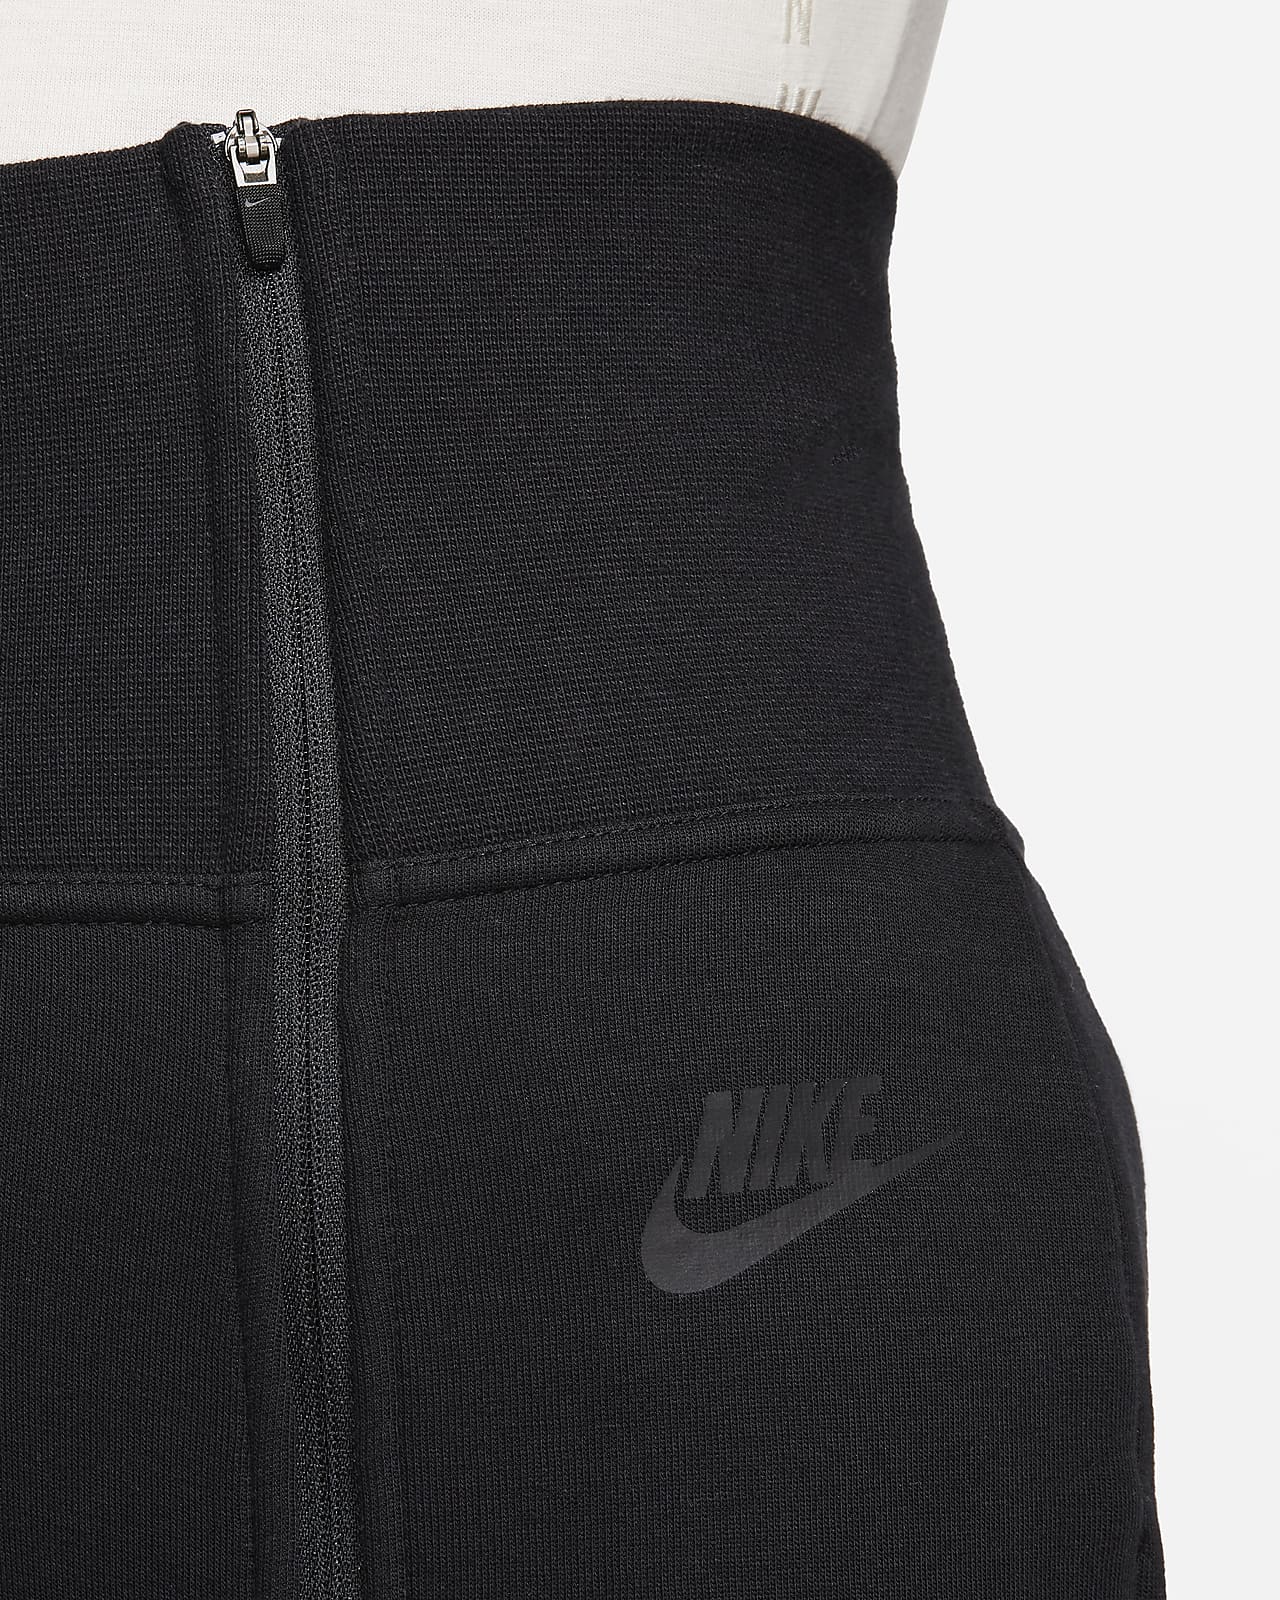  Nike Sportswear Tech Fleece Women's Pants CW4292-010